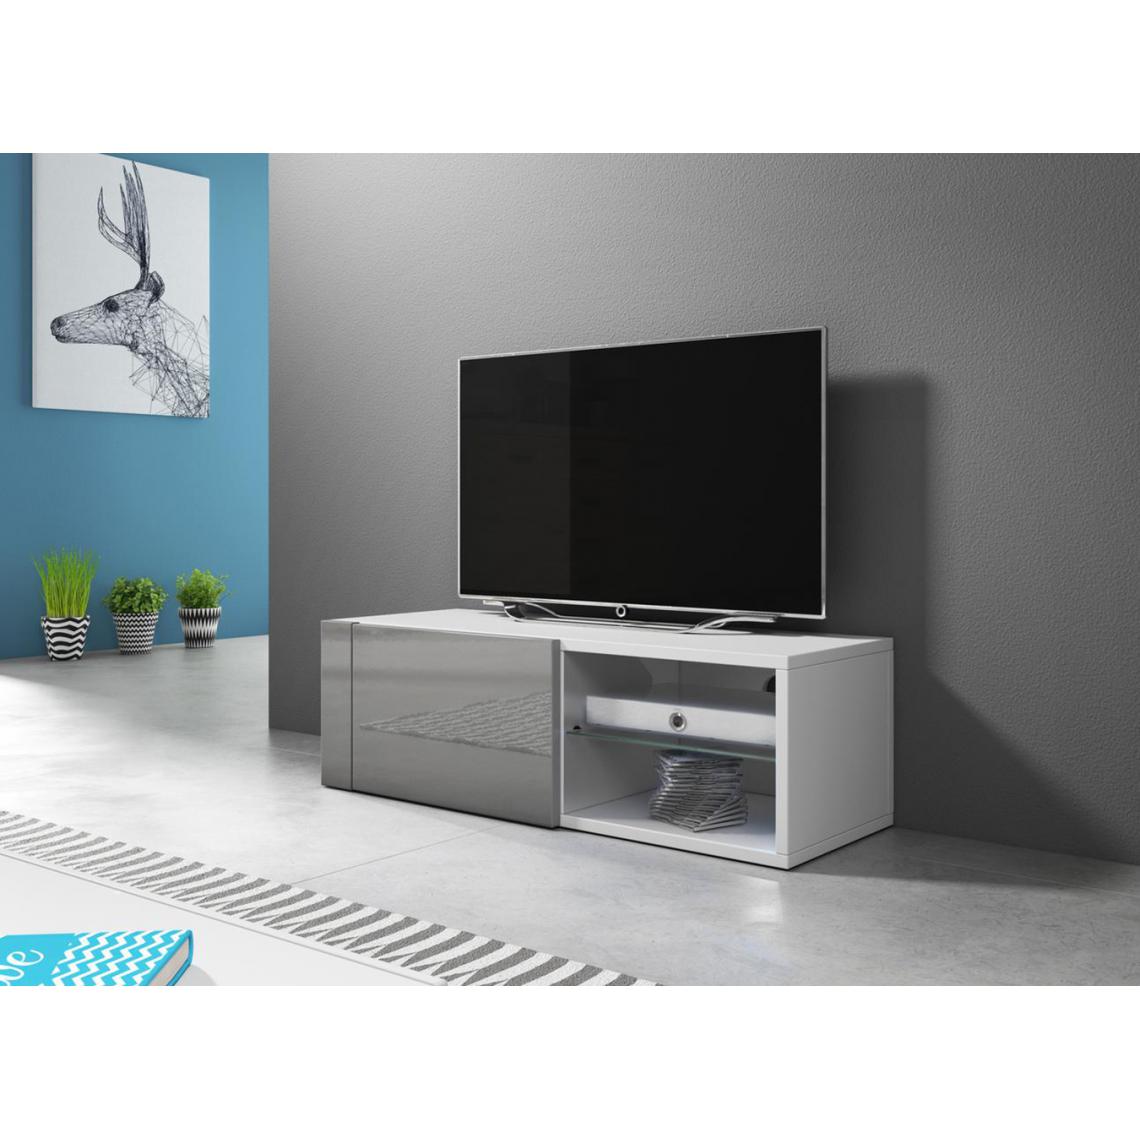 Pegane - Meuble TV coloris blanc mat / gris brillant - Hauteur 31 x Longueur 100 x Profondeur 36 cm - Meubles TV, Hi-Fi